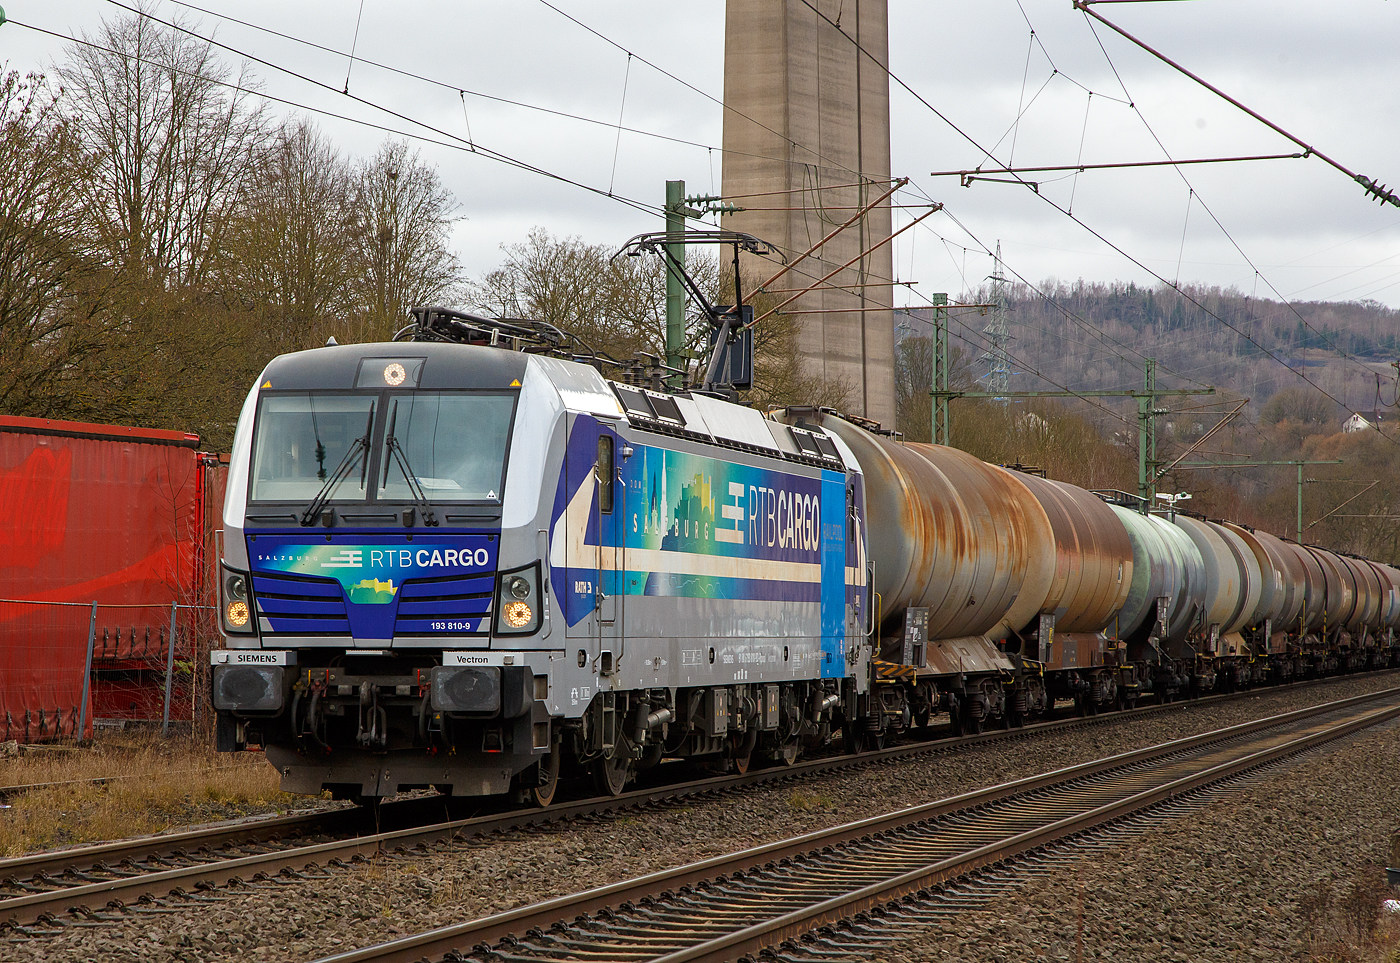 Die an die RTB Cargo GmbH vermietete SIEMENS Vectron AC – 193 810-9 „Salzburg“ (91 80 6193 810-9 D-Rpool) der Railpool GmbH (Mnchen), fhrt am 22.03.2021 mit einem Kesselwagenzug durch Siegen-Eiserfeld in Richtung Siegen. 

Die Siemens Vectron AC wurde 2014 von Siemens Mobility GmbH in Mnchen-Allach unter der Fabriknummer 21898 gebaut und an die Railpool GmbH in Mnchen geliefert. Diese Vectron Lokomotive ist als AC – Lokomotive (Wechselstrom-Variante) mit 6.400 kW konzipiert und zugelassen fr Deutschland, sterreich, Ungarn und Rumnien, sie hat eine Hchstgeschwindigkeit von 200 km/h.